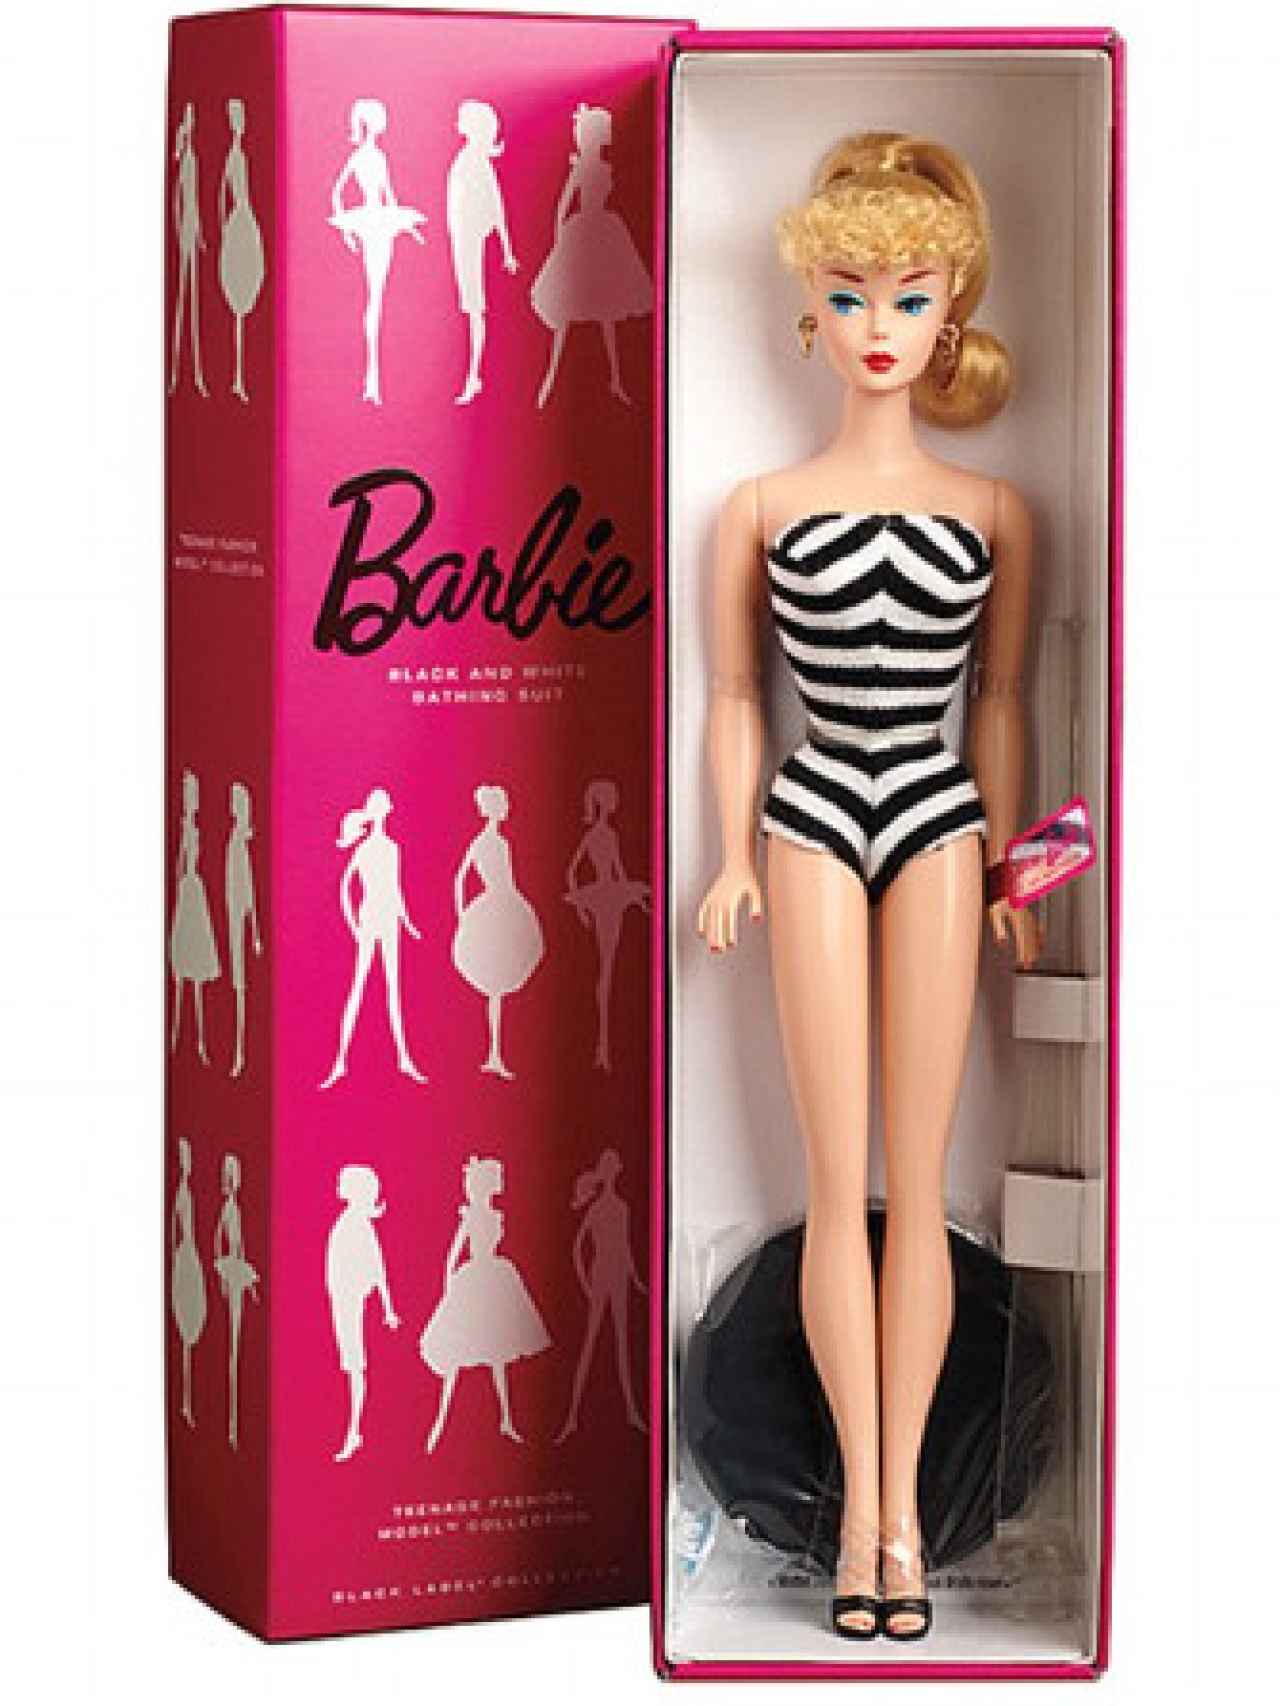 Barbie original de 1959.